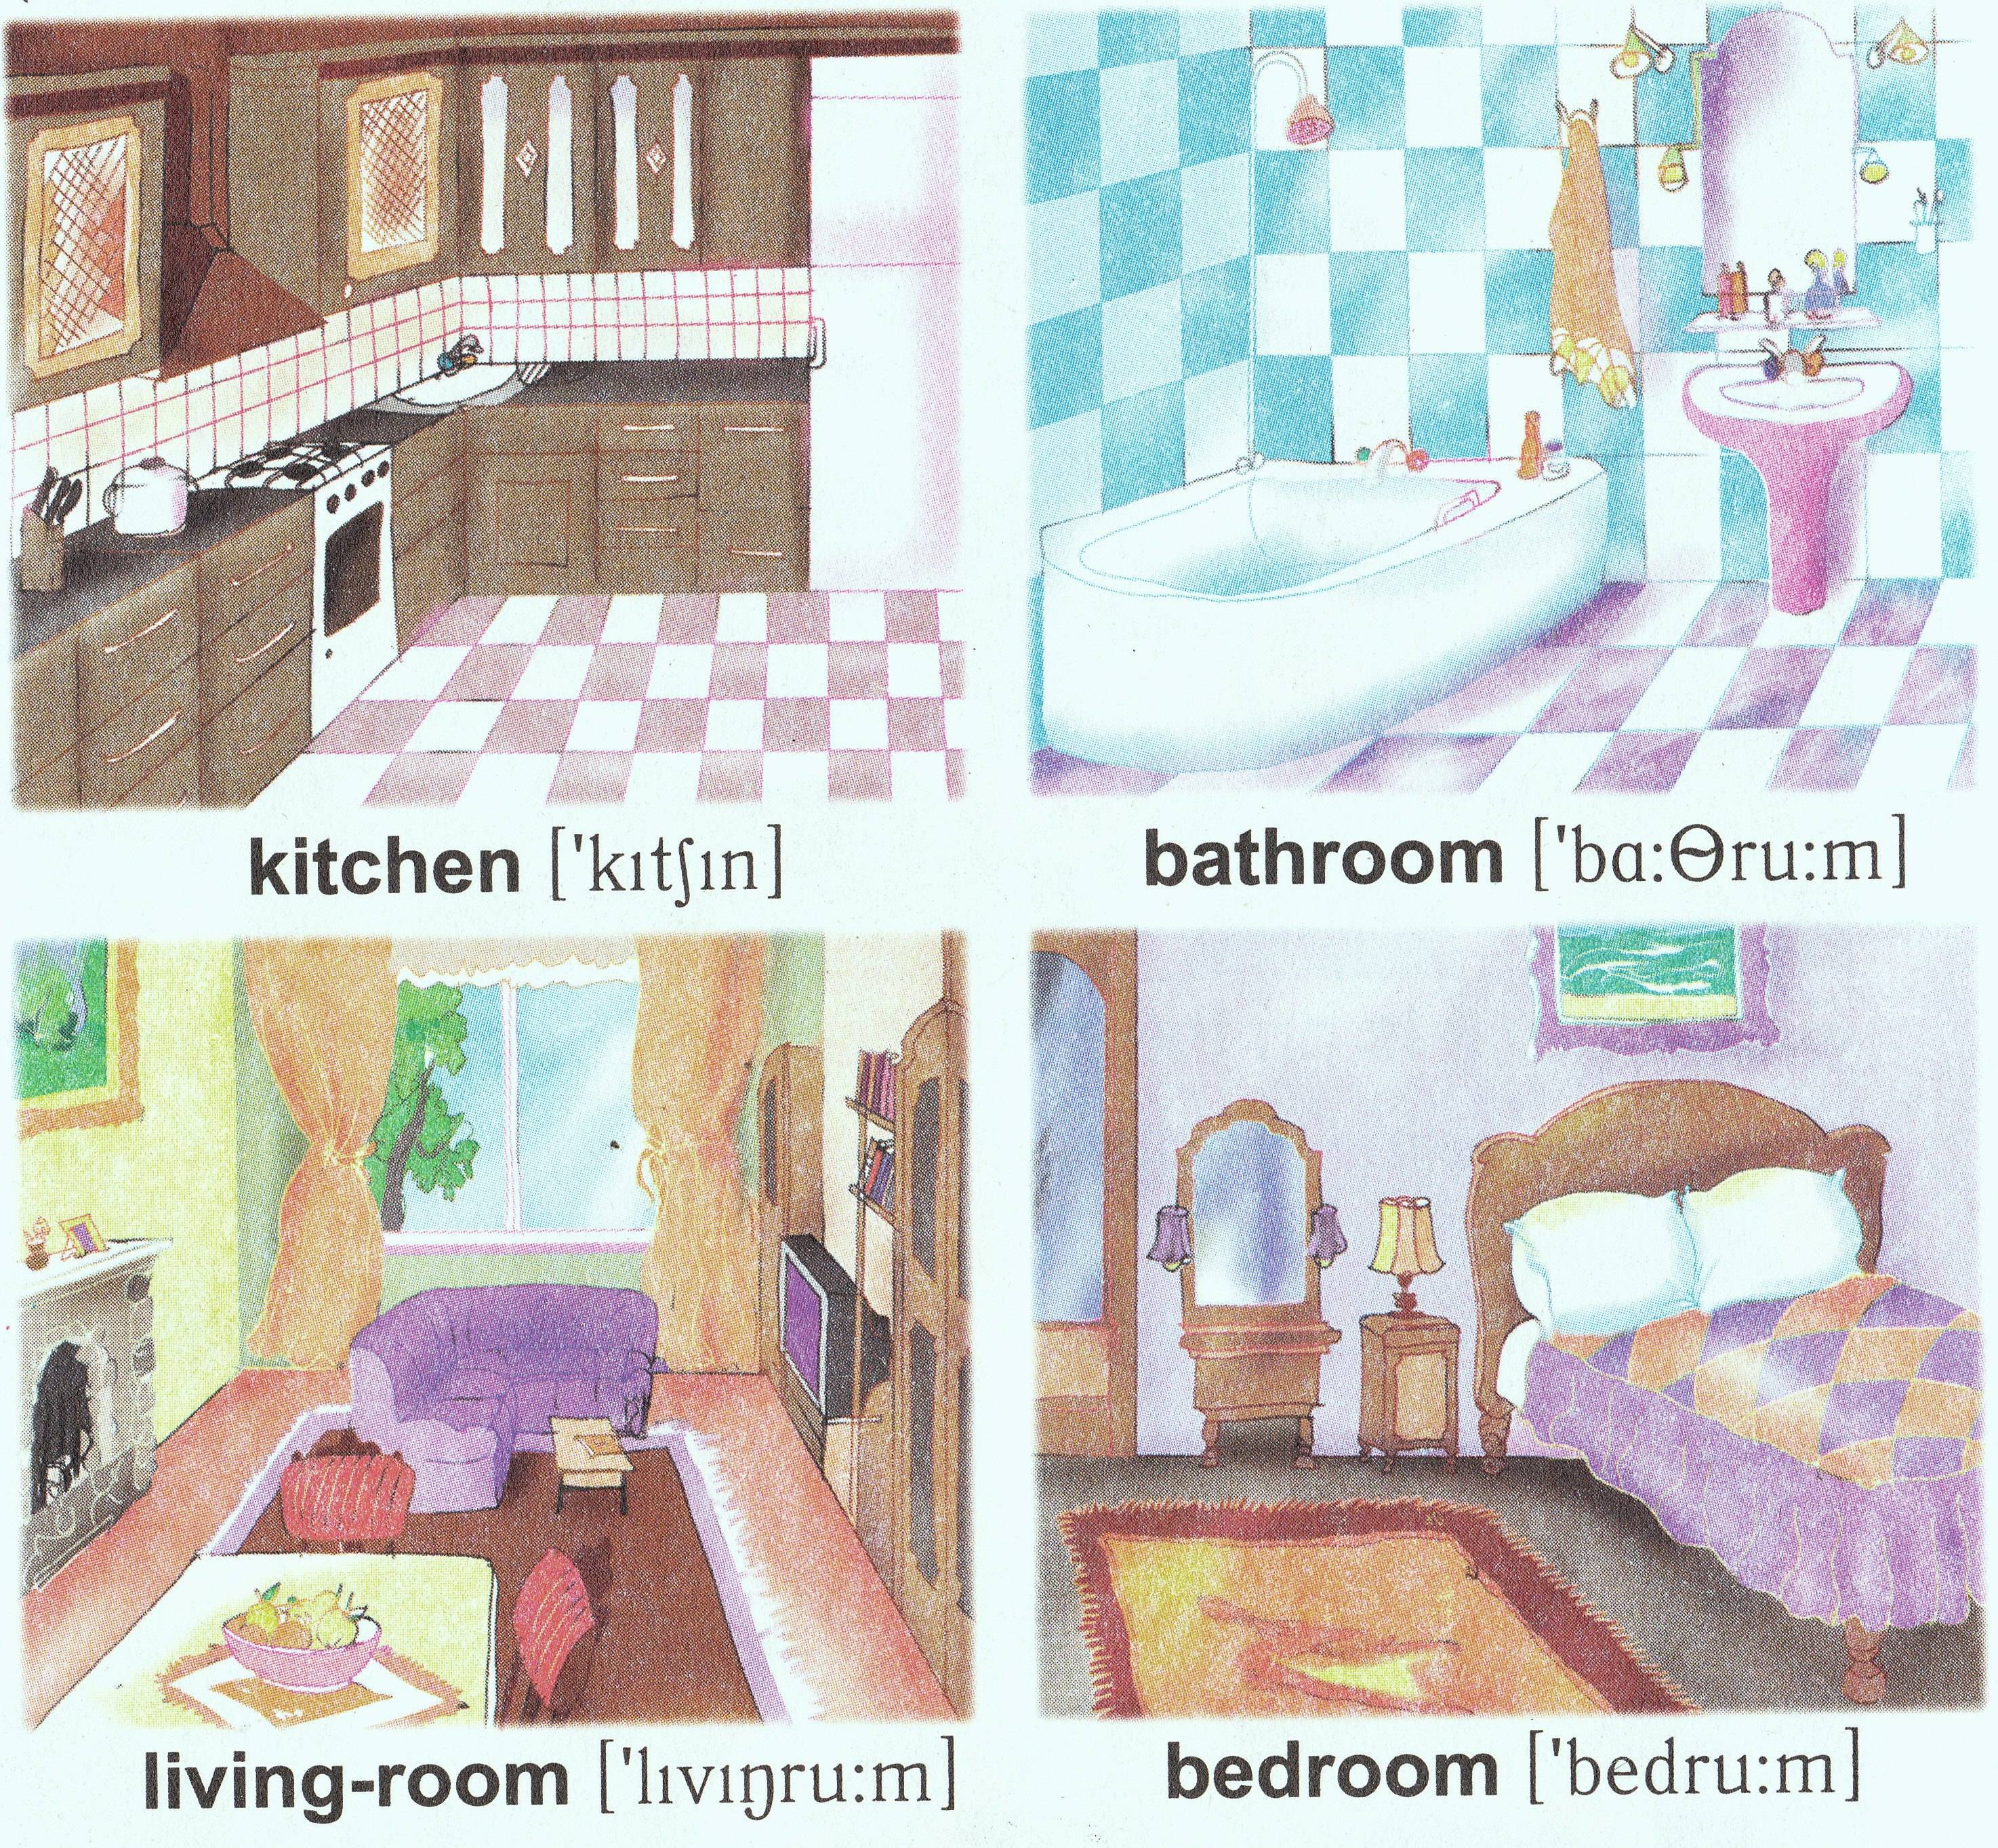 Are there two in flat. Название комнат на английском. Комнаты в квартире названия. Название комнат для детей. Комната для урока английского языка.